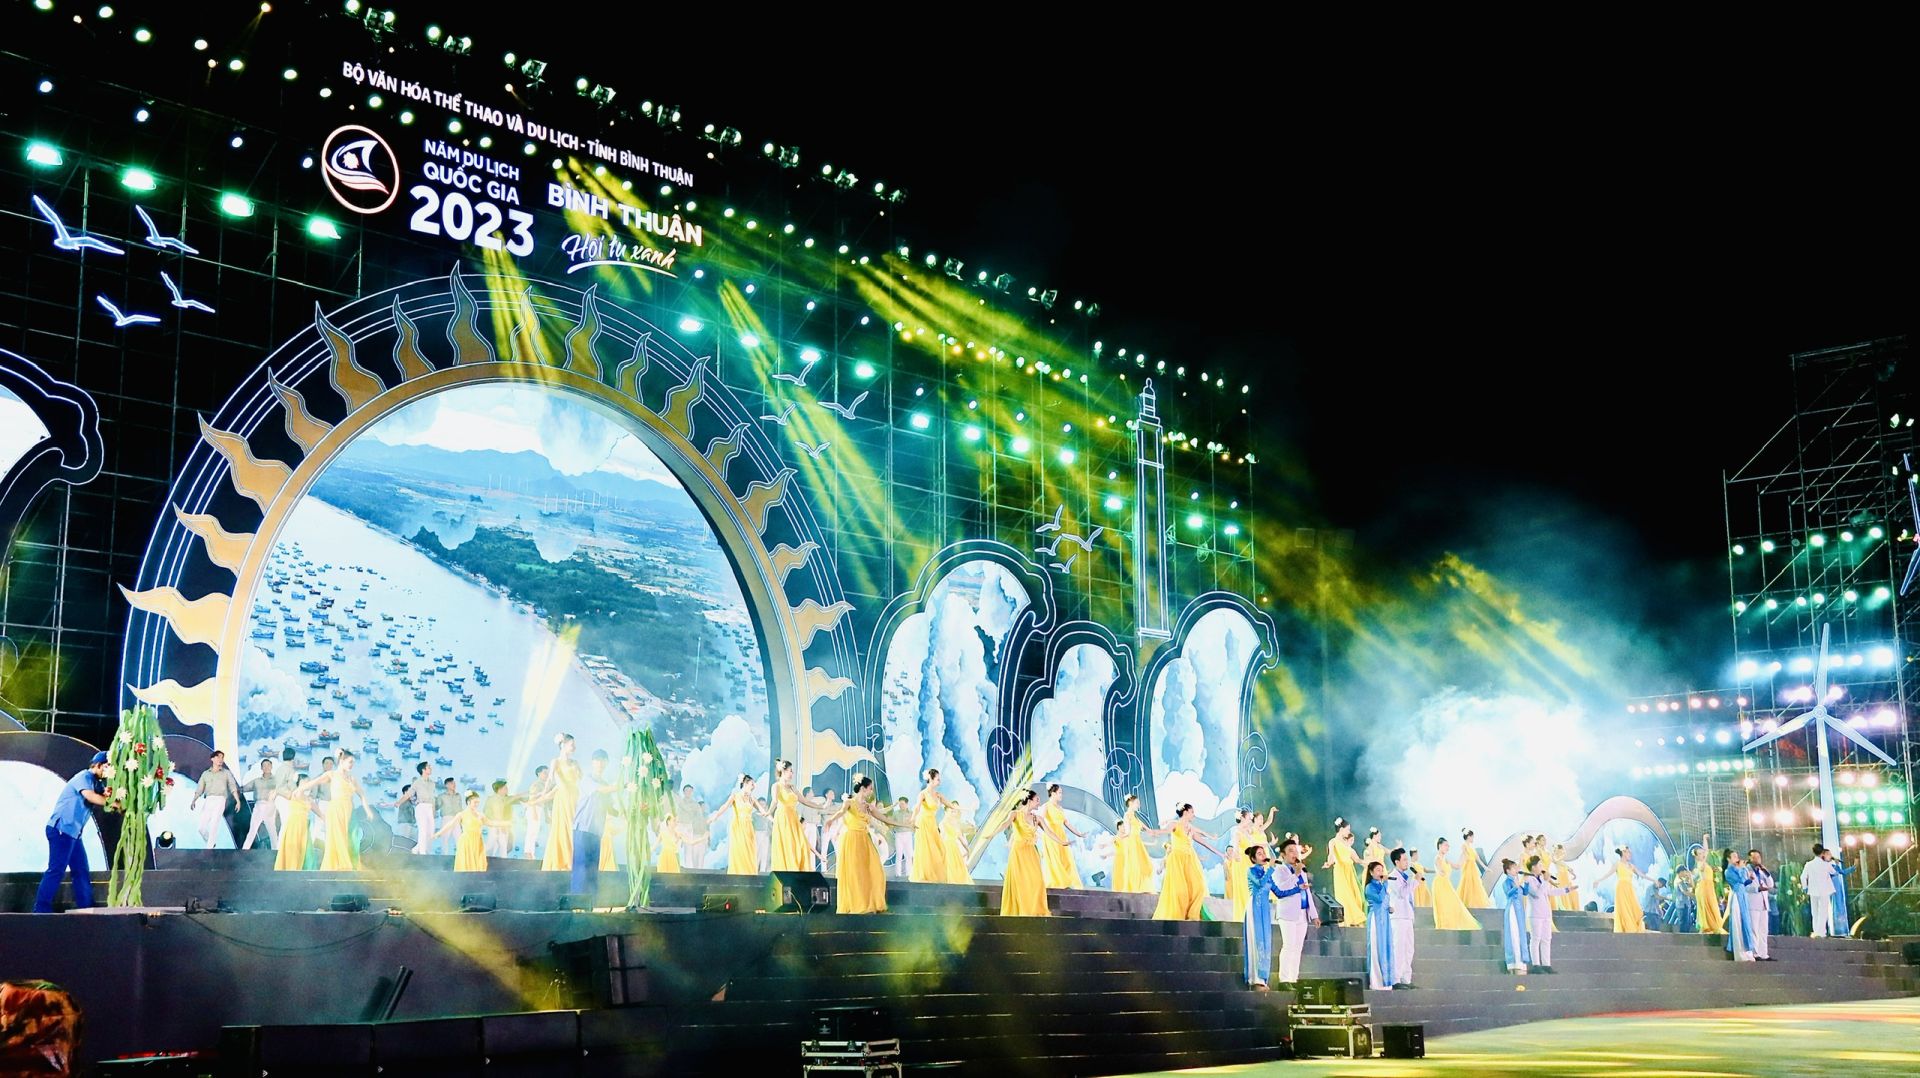 Chương trình Lễ khai mạc Năm Du lịch quốc gia 2023 gồm 3 chương, với chủ đề “Hội tụ xanh” thể hiện tinh thần quyết tâm hiện thực hóa mục tiêu phát triển du lịch xanh và bền vững của ngành Du lịch Việt Nam